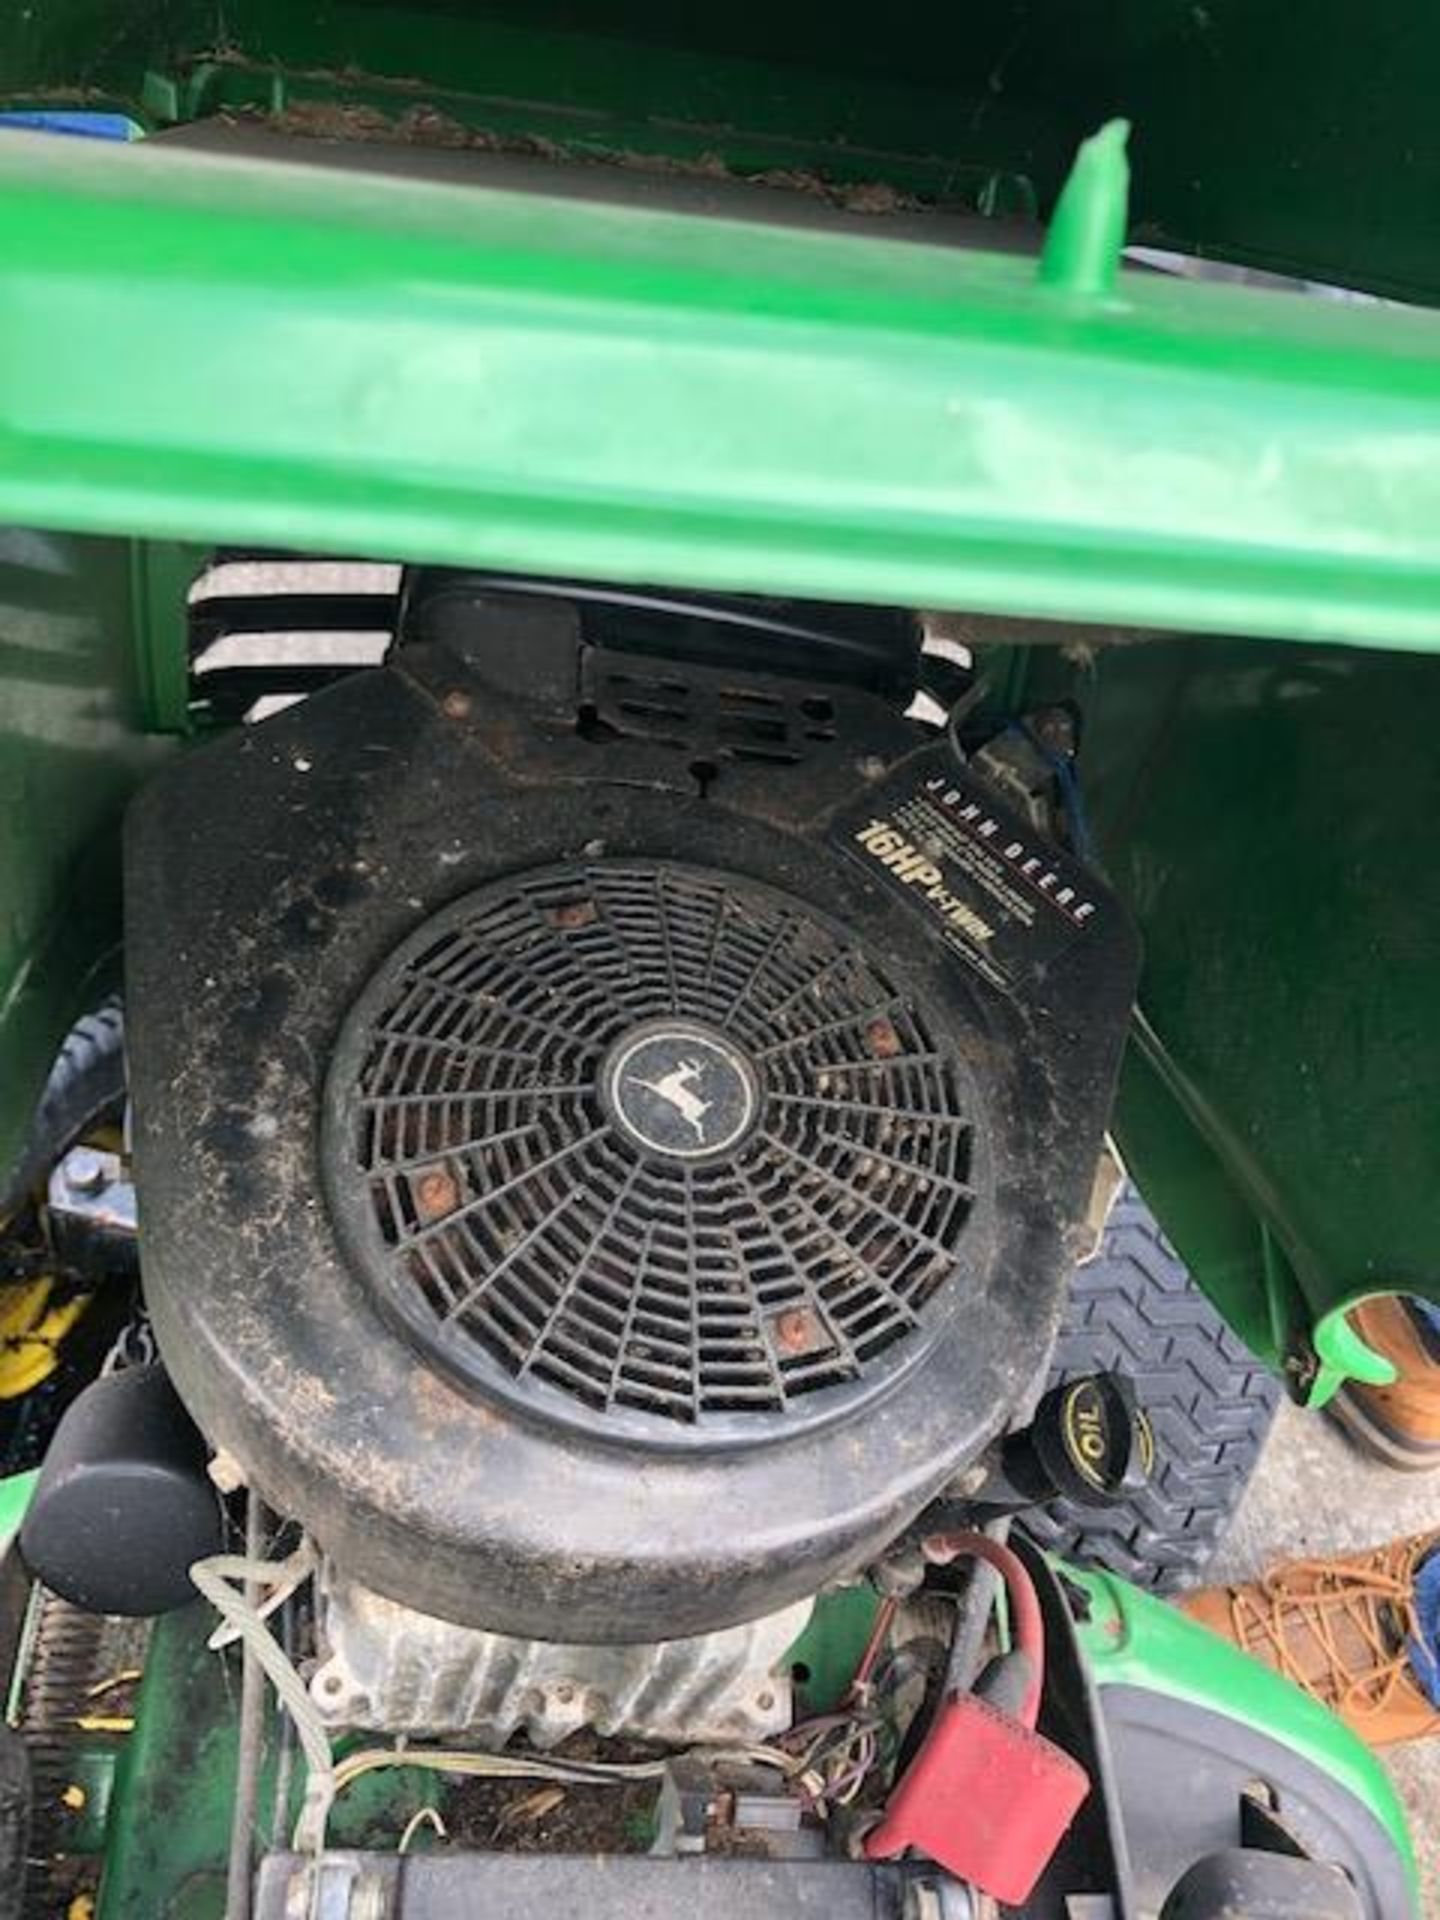 John Deere LT166 ride on petrol mower - no keys - sold as spares and repairs - Image 4 of 6